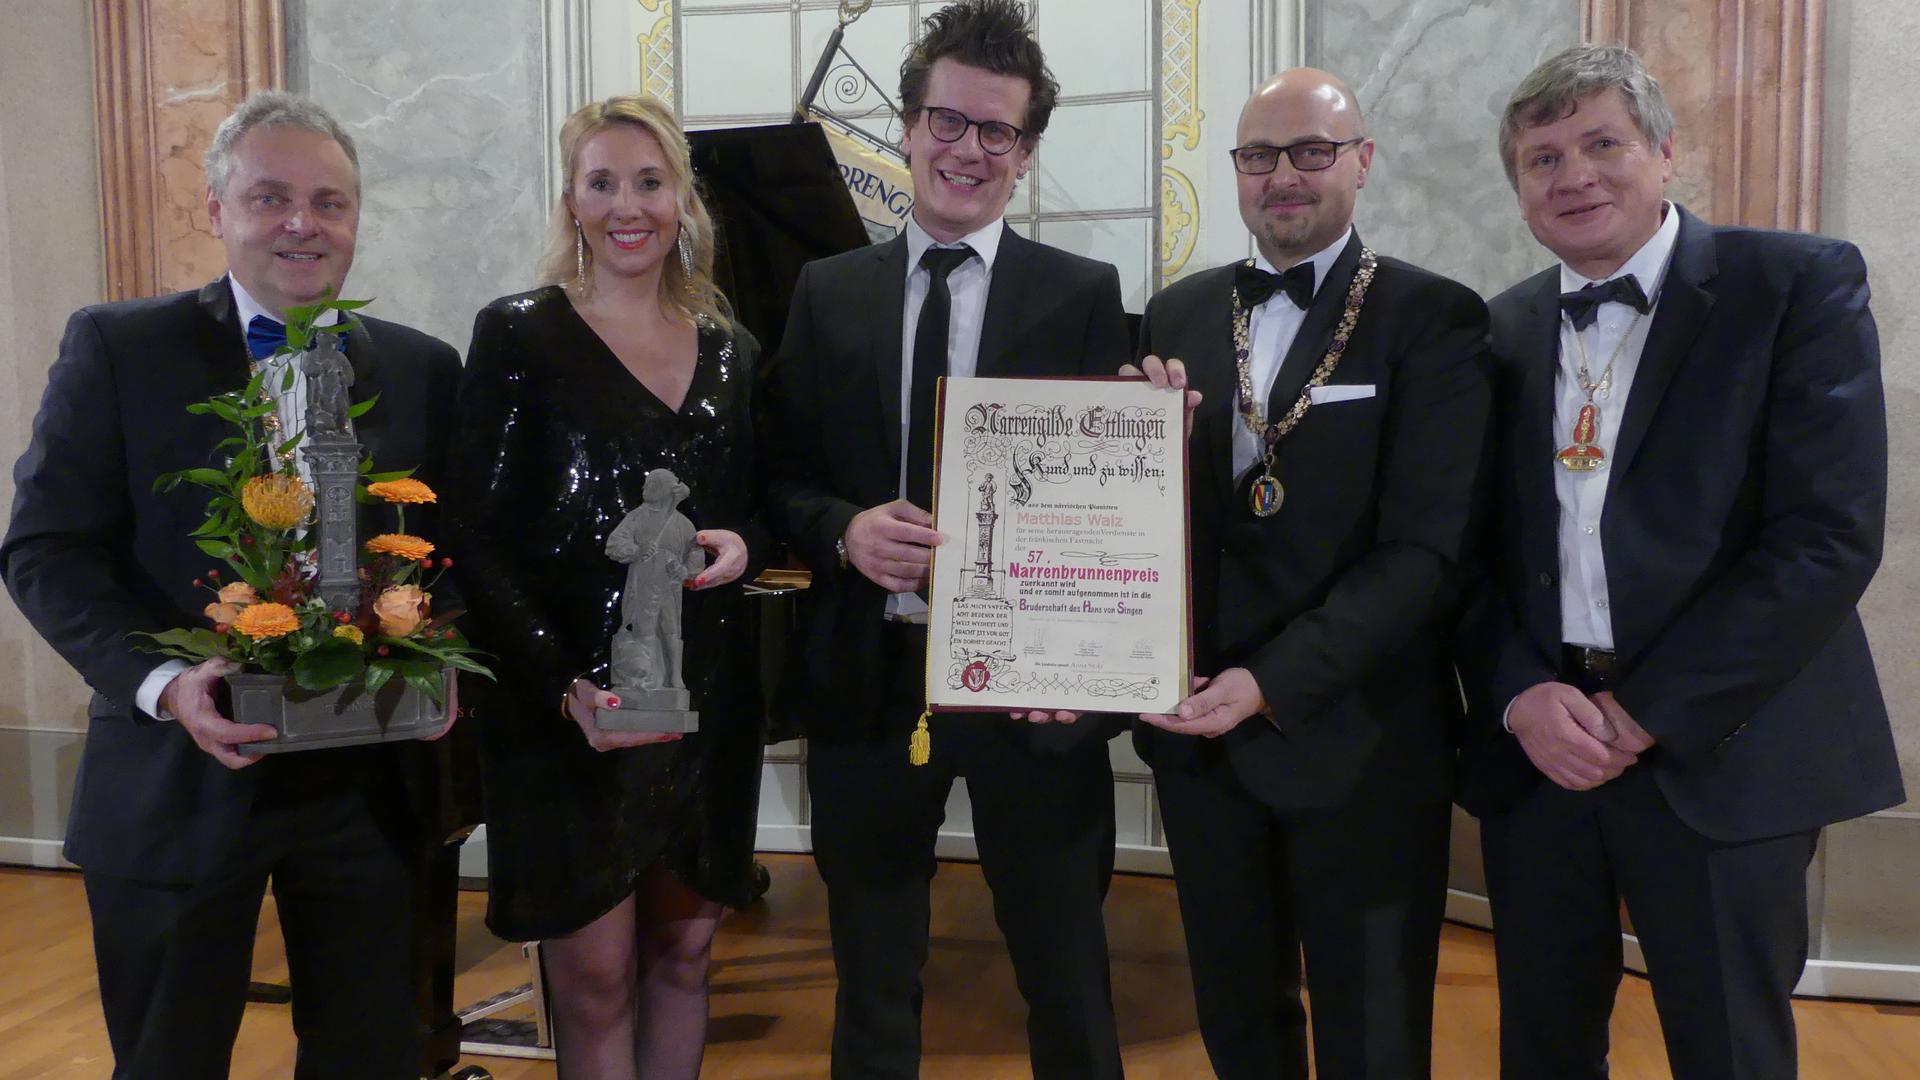 Fränkischer Fastnachter bekommt Narrenbrunnenpreis: Ralph Klein, Anna Stolz, Matthias Walz, Johannes Arnold und Bernhard Maier (von links)